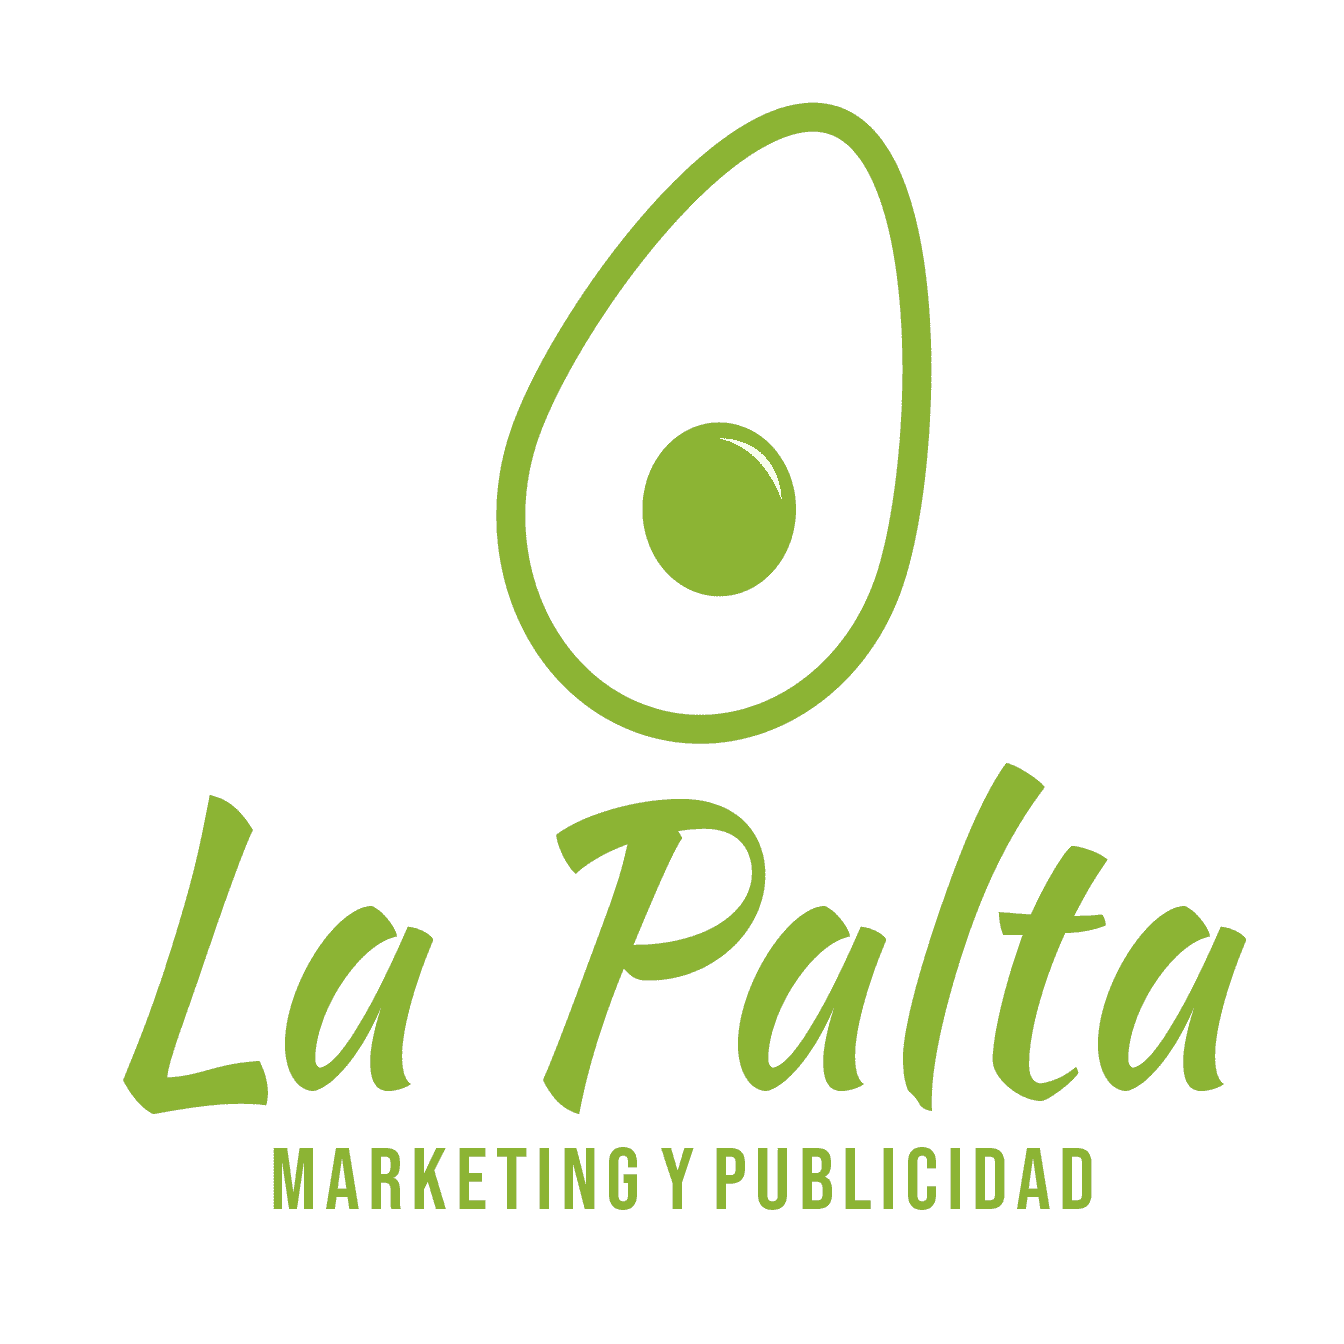 Agencia La Palta Marketing y Publicidad